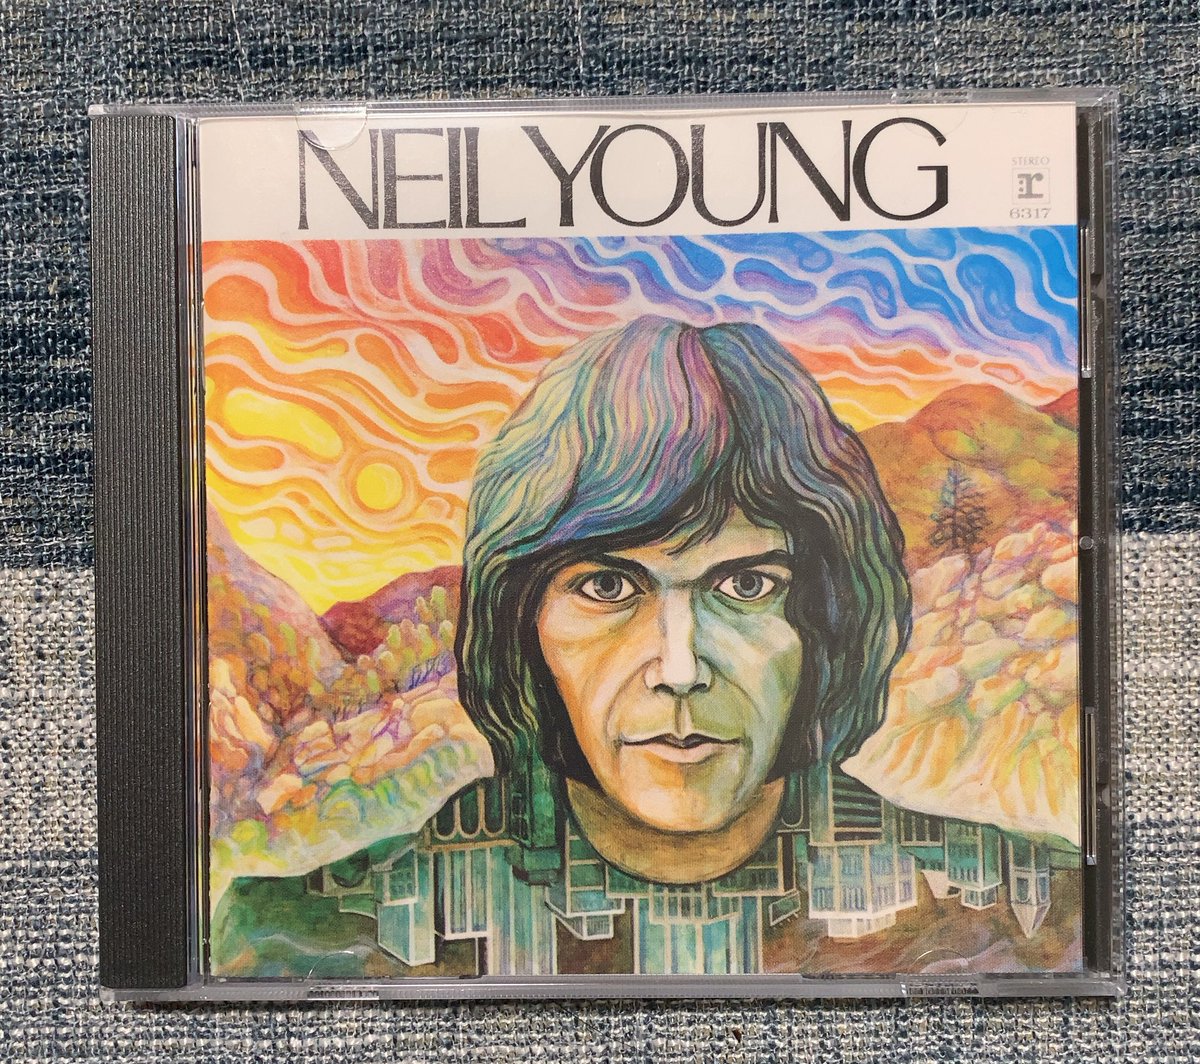 ソロデビュー作。
ヤングの本領はまだ発揮されていないが、「The Loner」はめっちゃ良い。

Neil Young / Neil Young